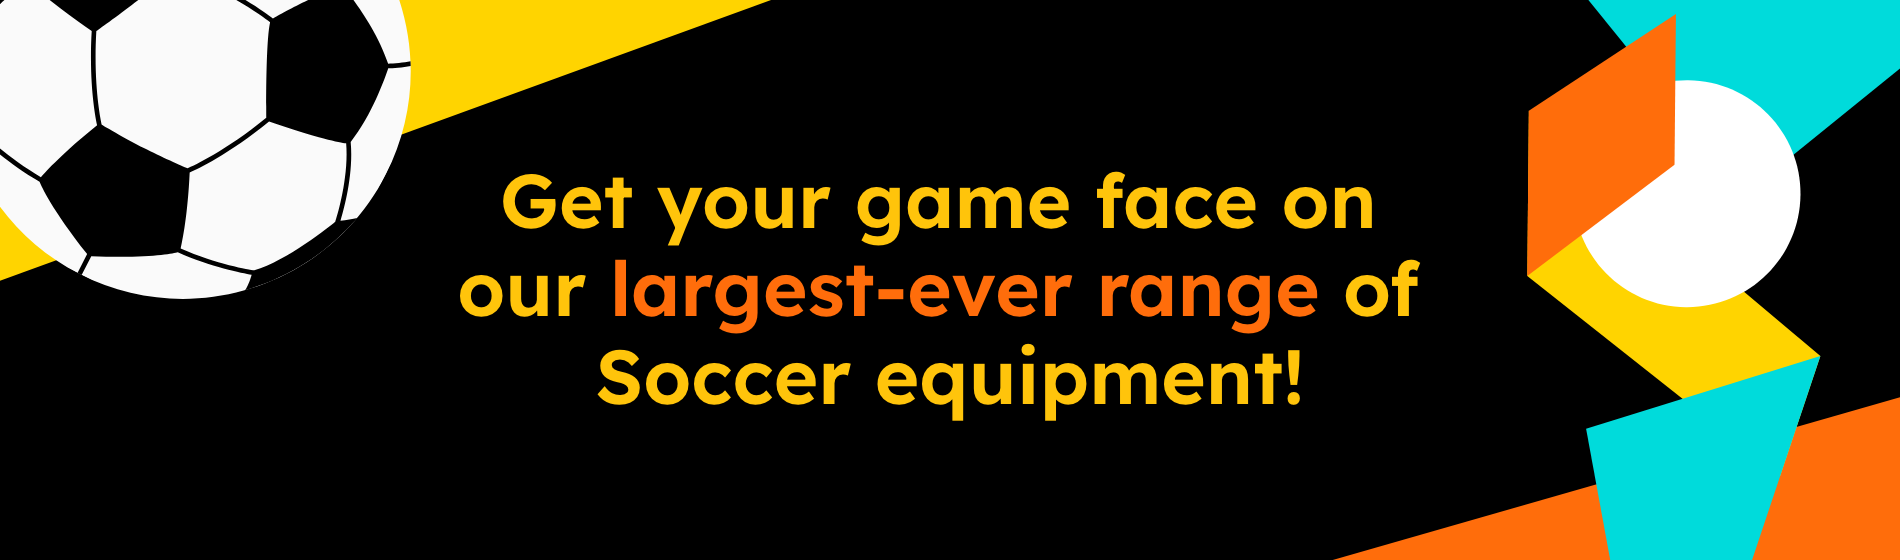 Soccer equipment